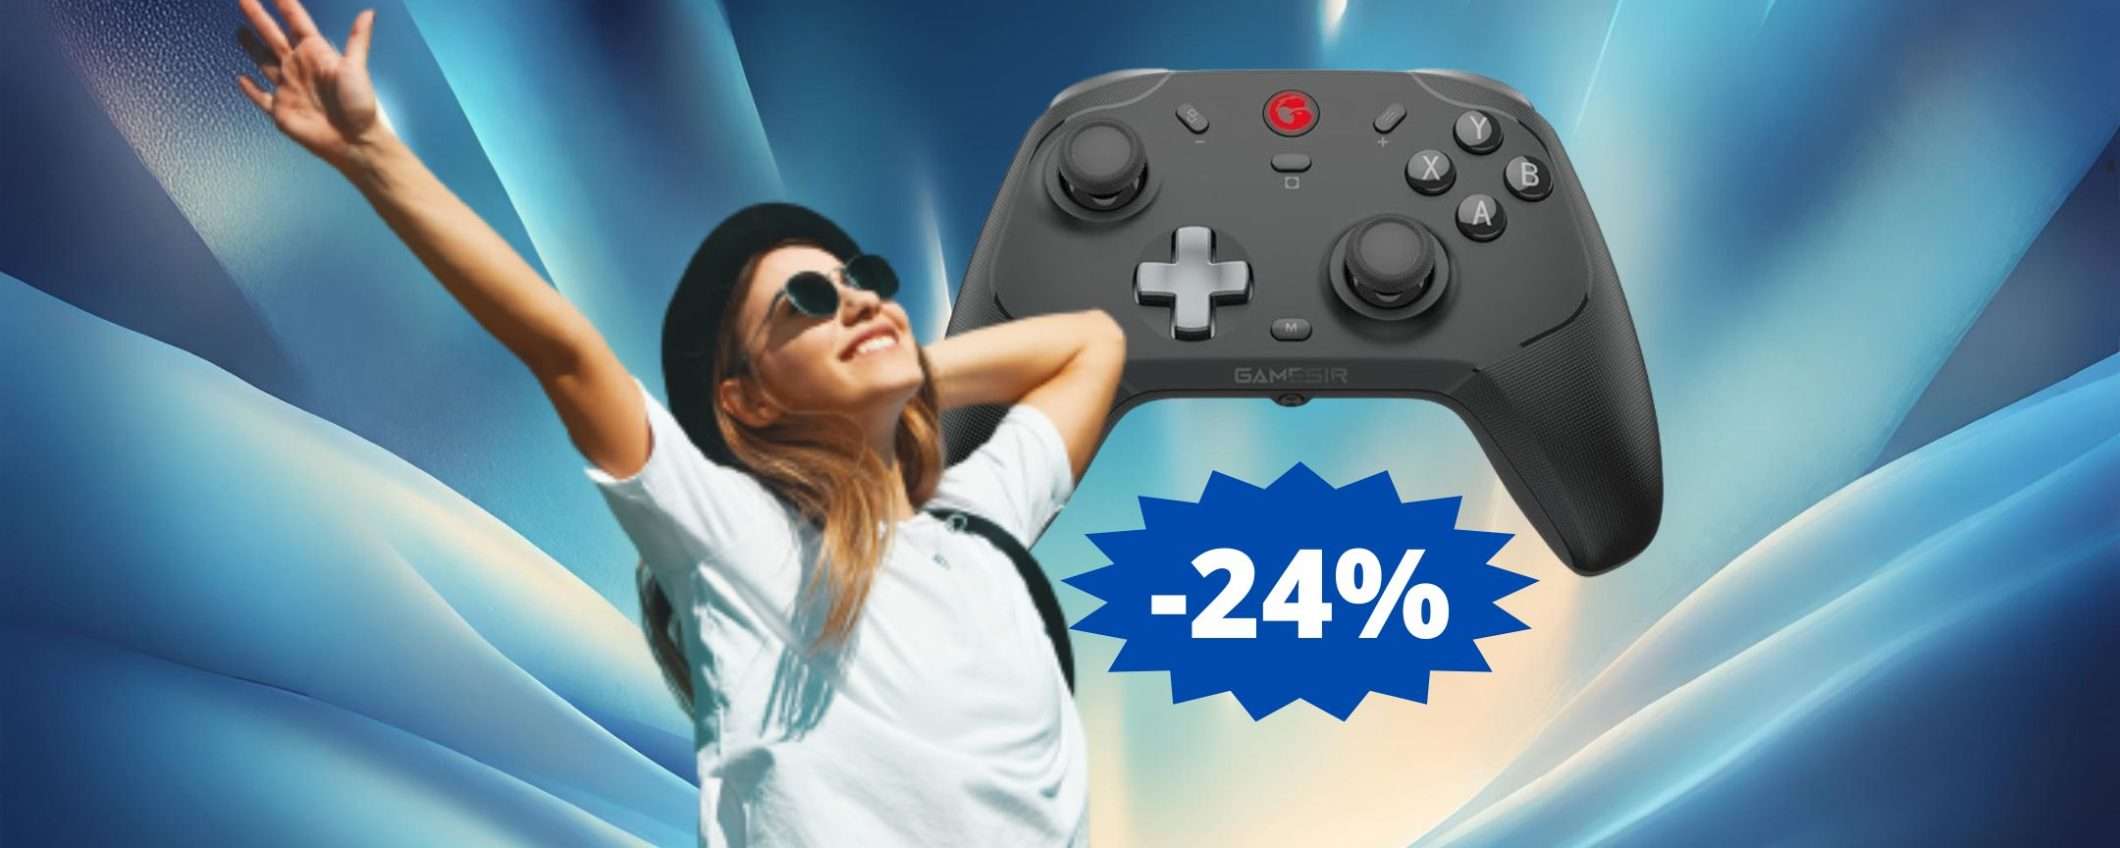 Controlle GameSir T4 Cyclone PRO: SUPER sconto del 24%